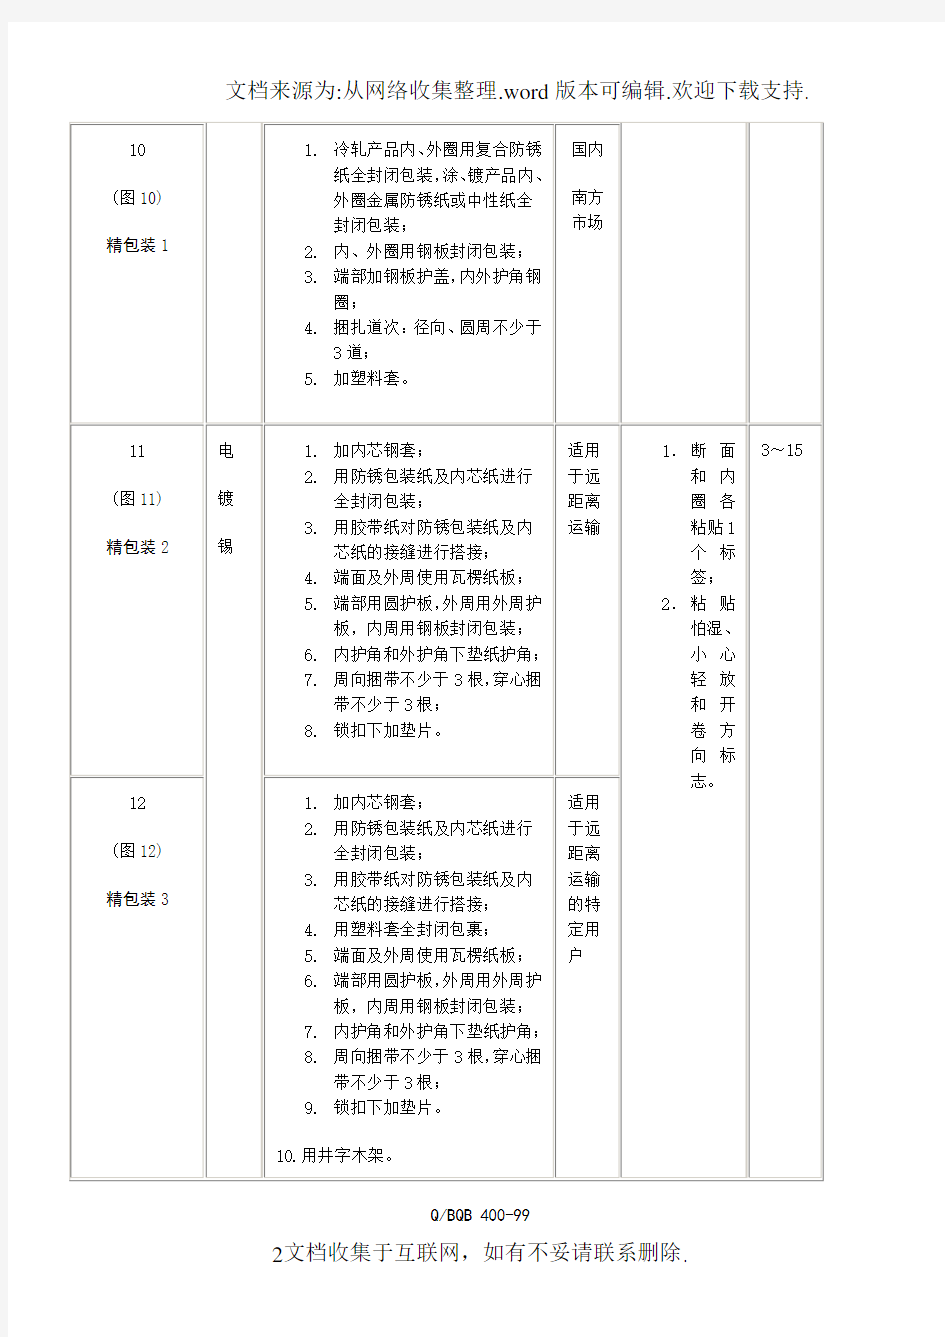 上海宝钢集团公司企业标准